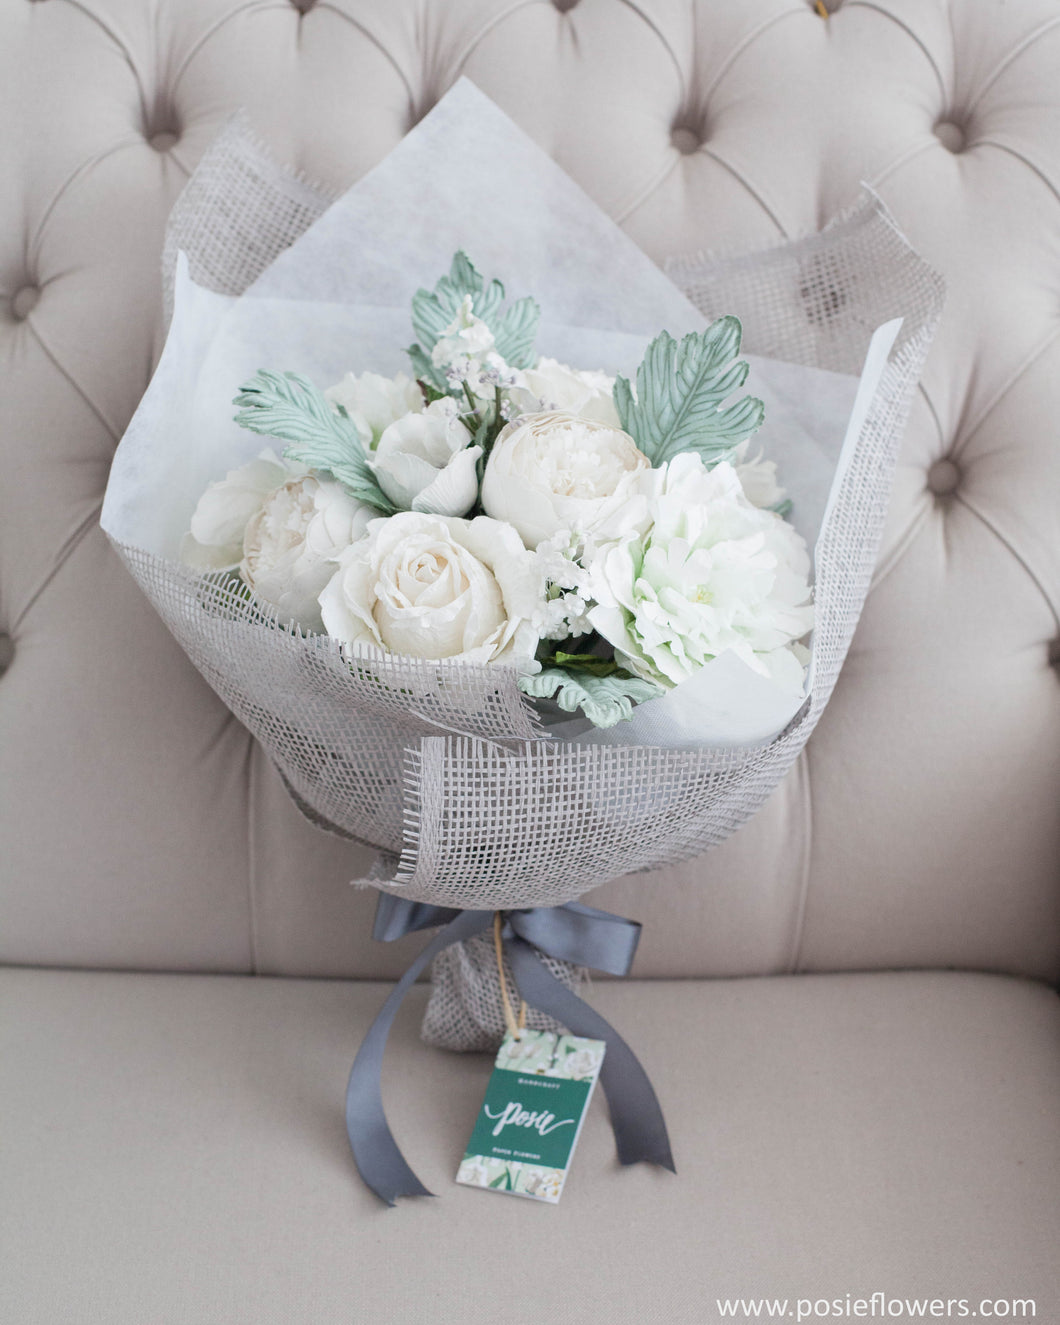 ช่อดอกไม้แสดงความยินดี ดอกไม้ประดิษฐ์ โทนสีขาวเทา - Back to December Congratulations Bouquet